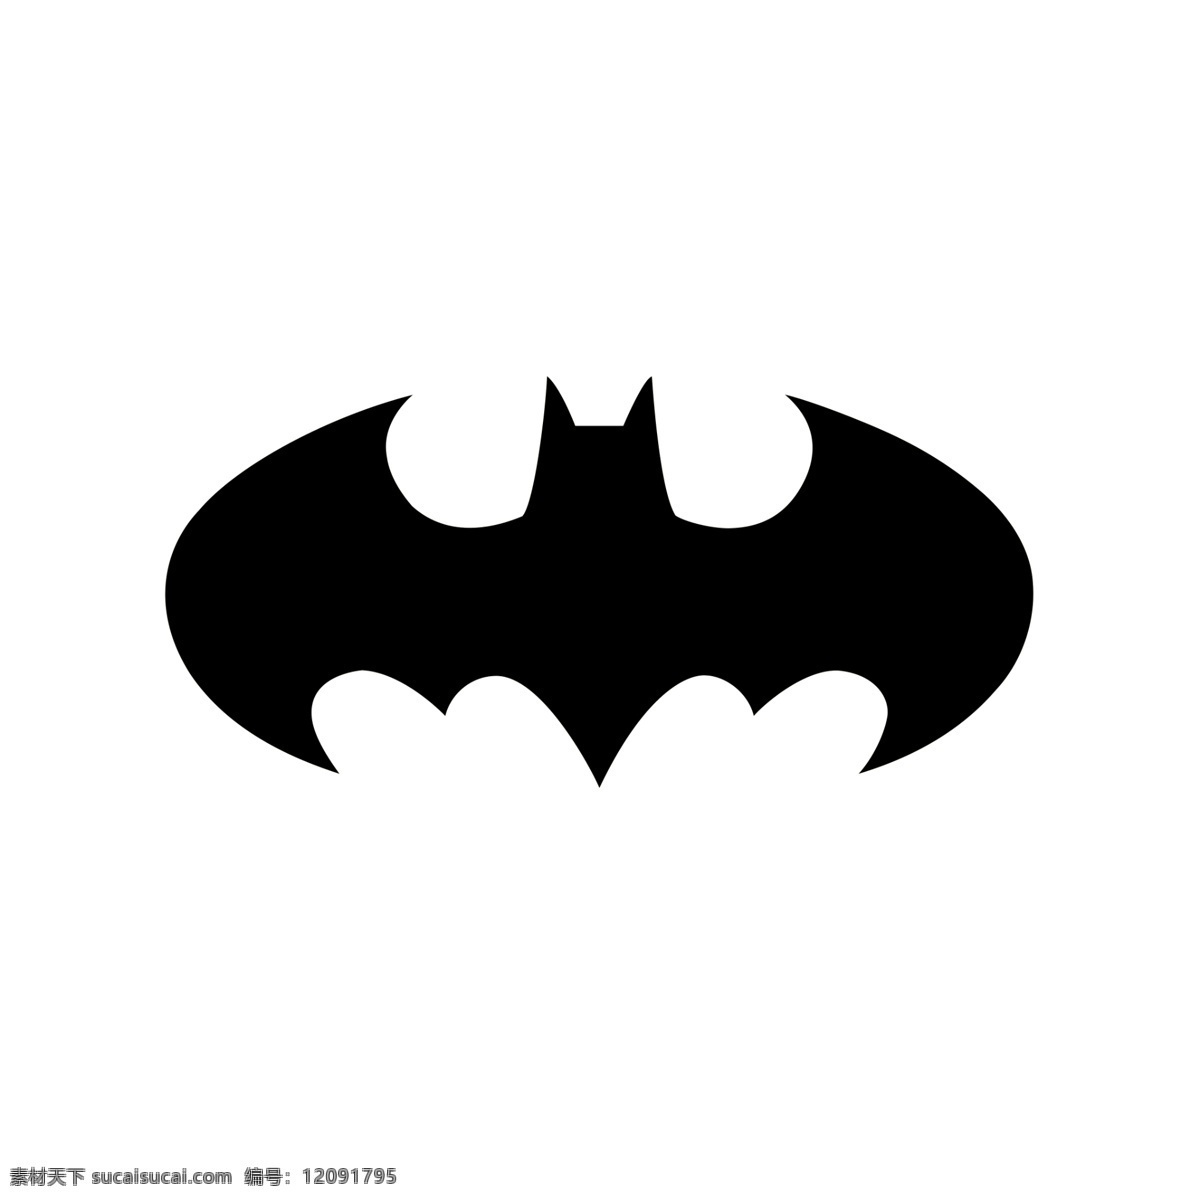 蝙蝠侠 t恤刻图 印图 高清 t恤刻图印图 可夜光 淘宝用图 标志图标 其他图标